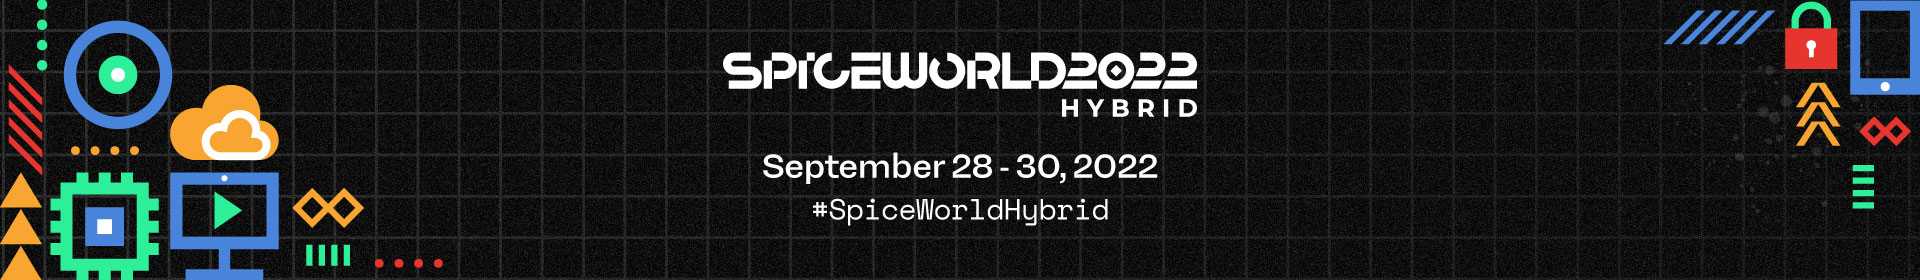 SpiceWorld Hybrid 2022 Event Banner